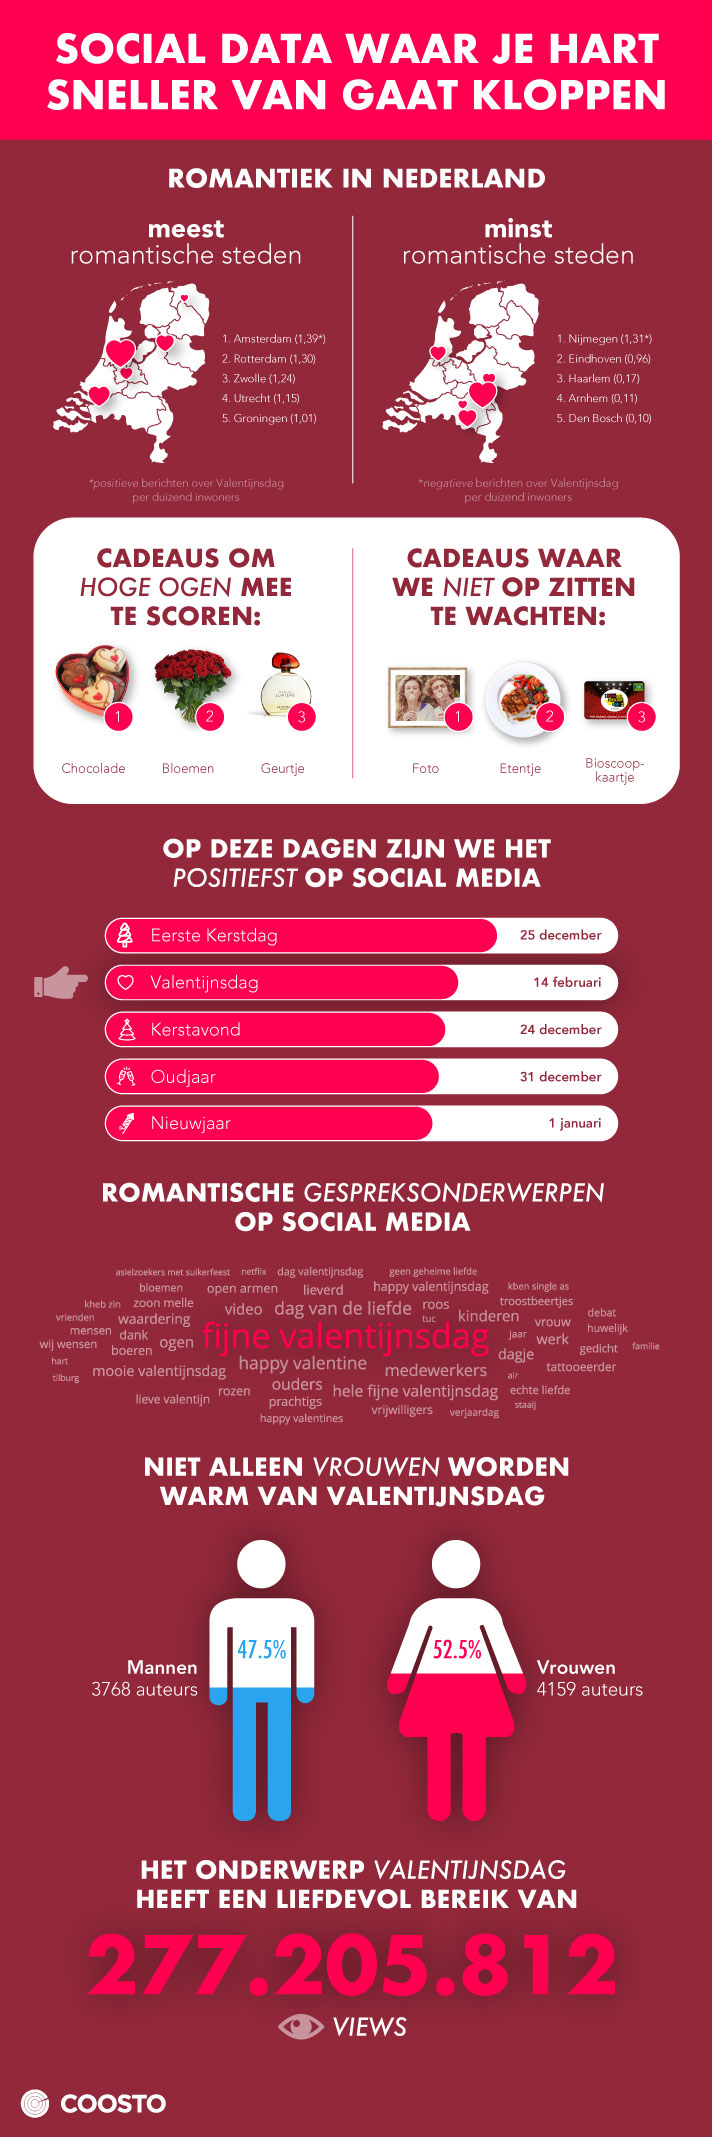 Valentijnsdag social data